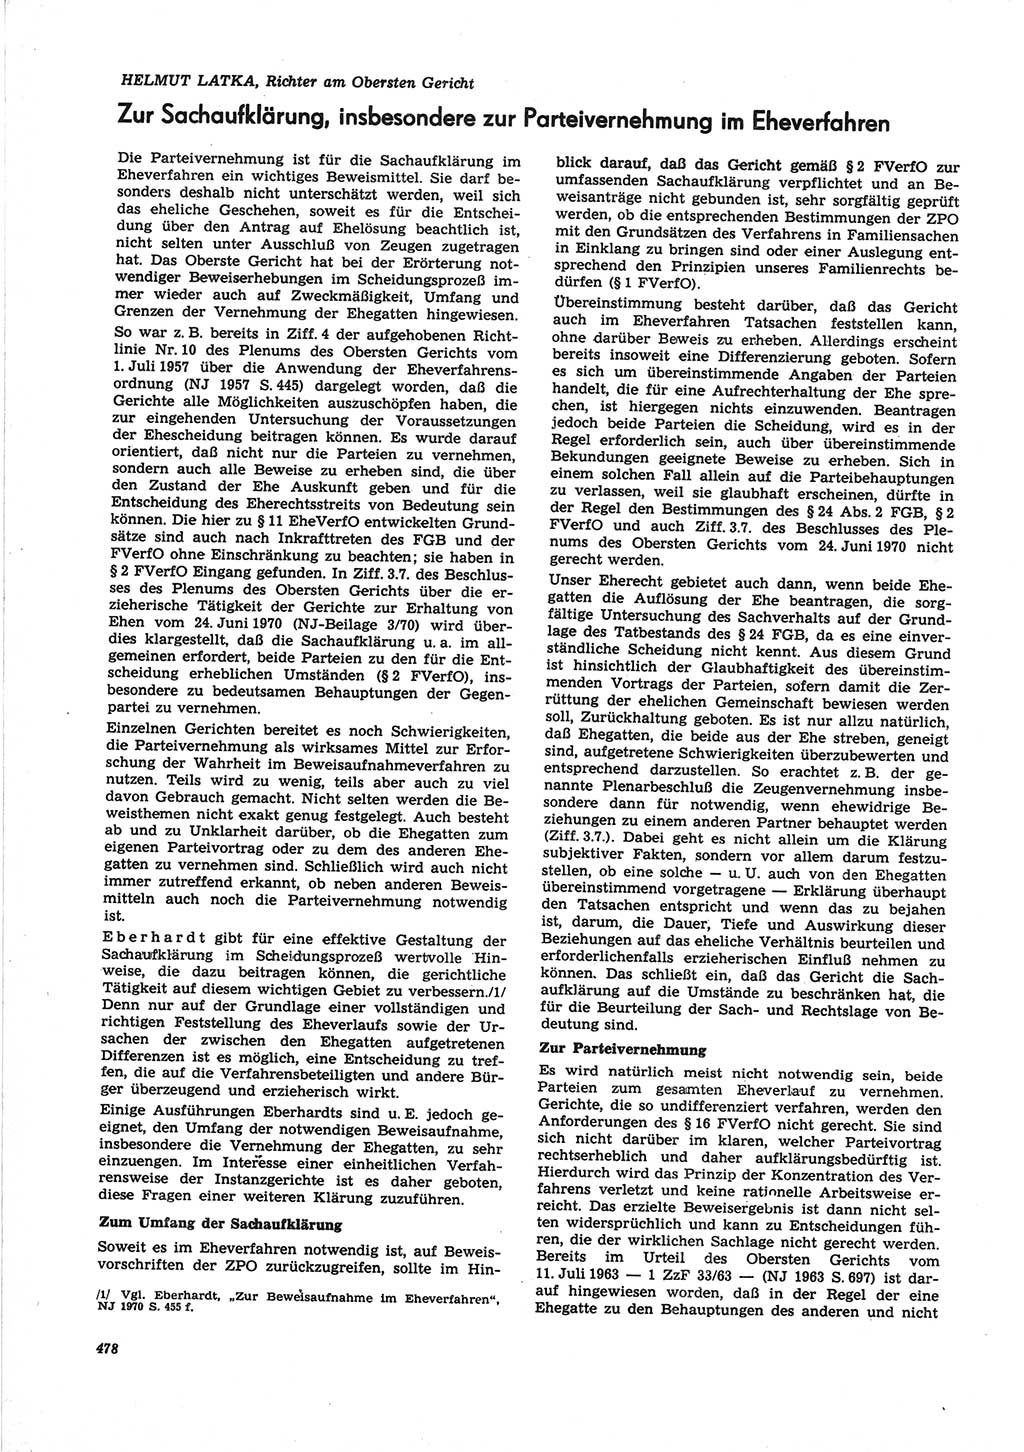 Neue Justiz (NJ), Zeitschrift für Recht und Rechtswissenschaft [Deutsche Demokratische Republik (DDR)], 25. Jahrgang 1971, Seite 478 (NJ DDR 1971, S. 478)